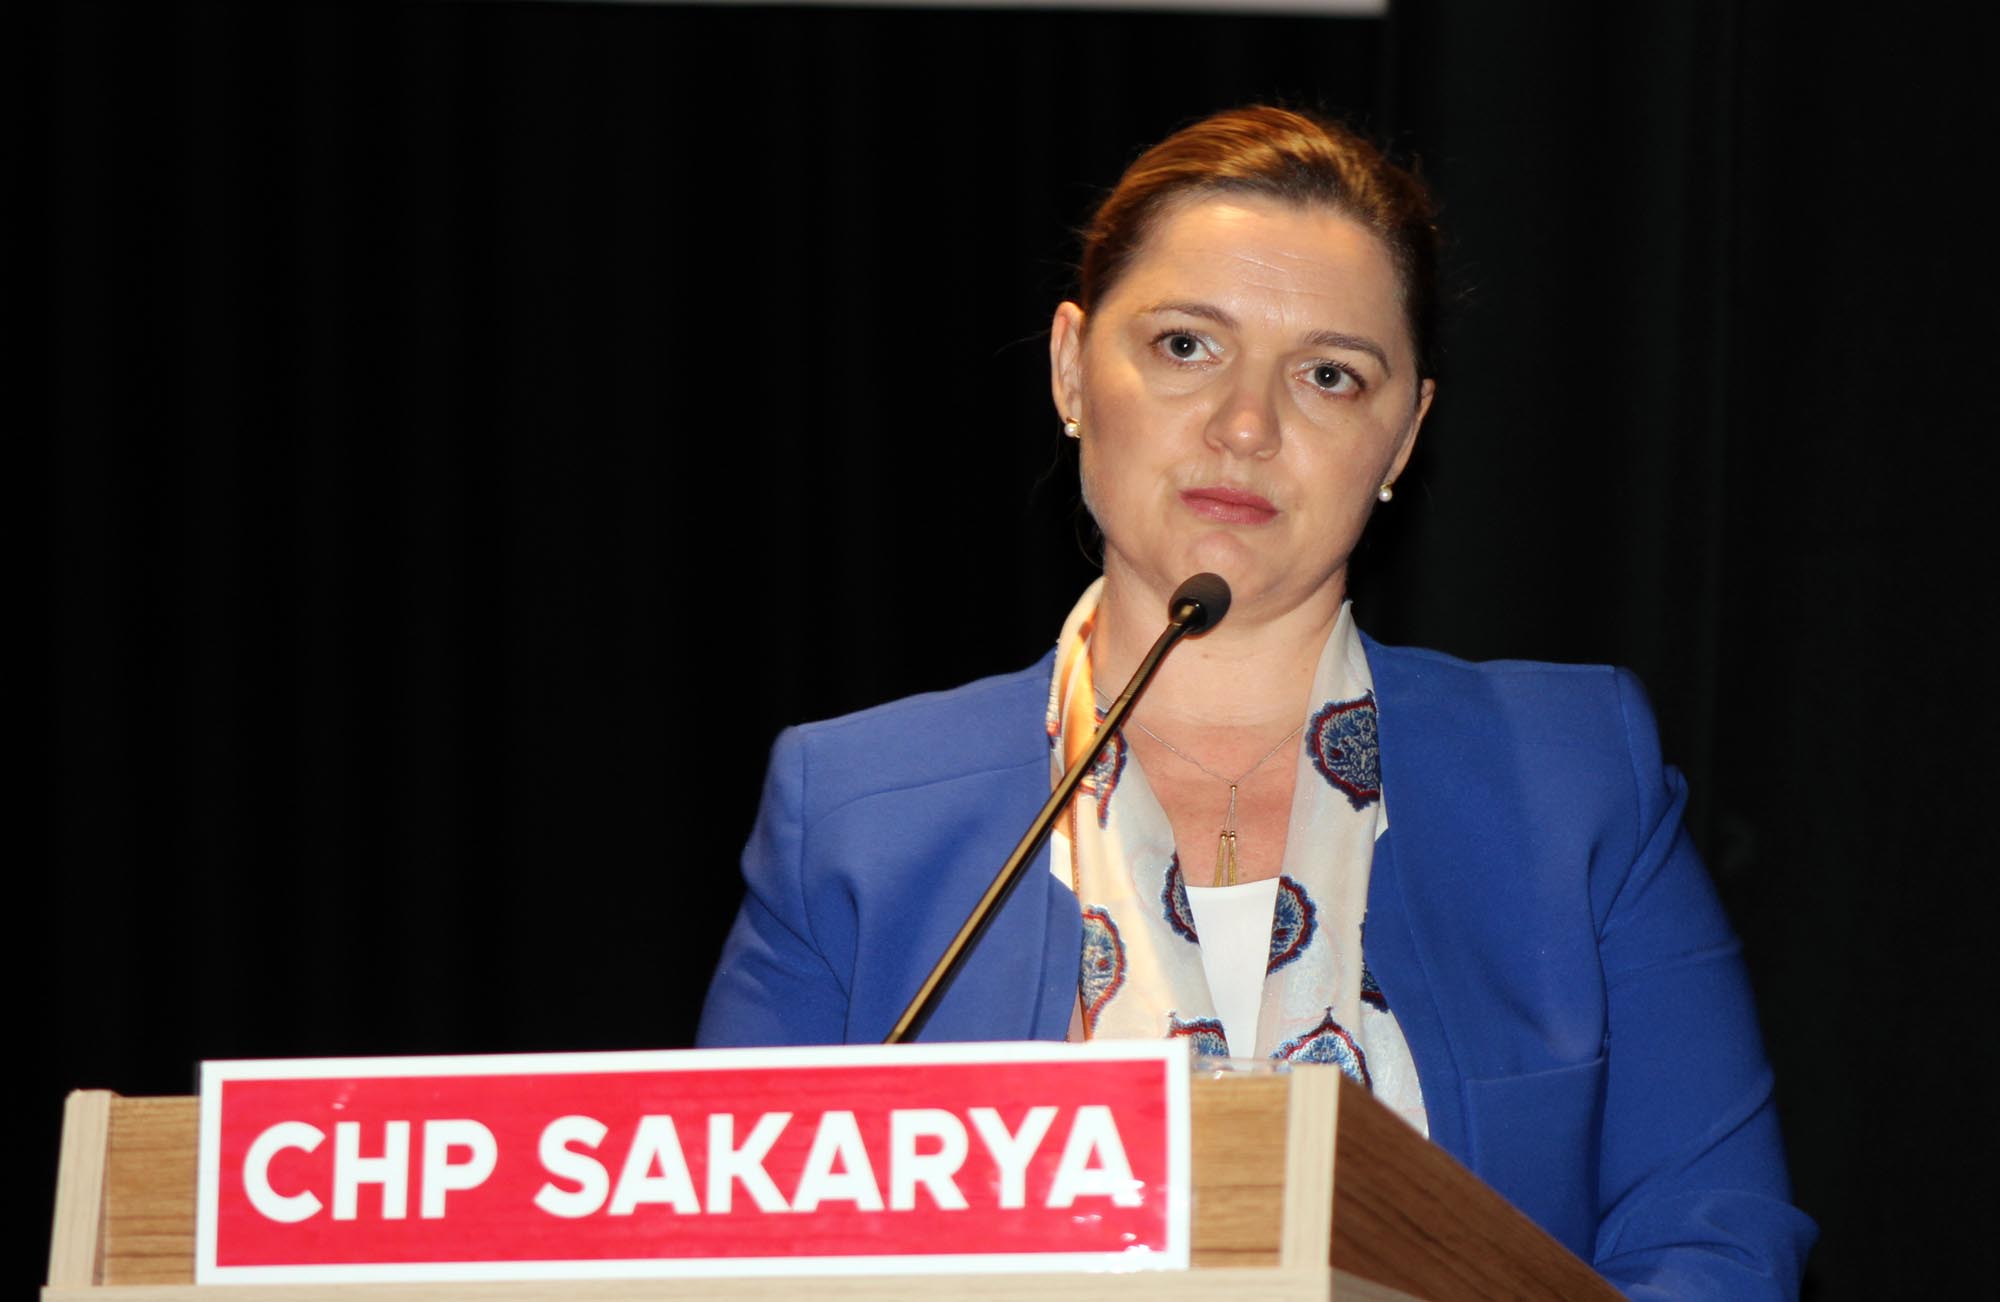 CHP’li Böke: Anayasa değişikliği gerçekleşirse demokratik cumhuriyetin sonu gelecek